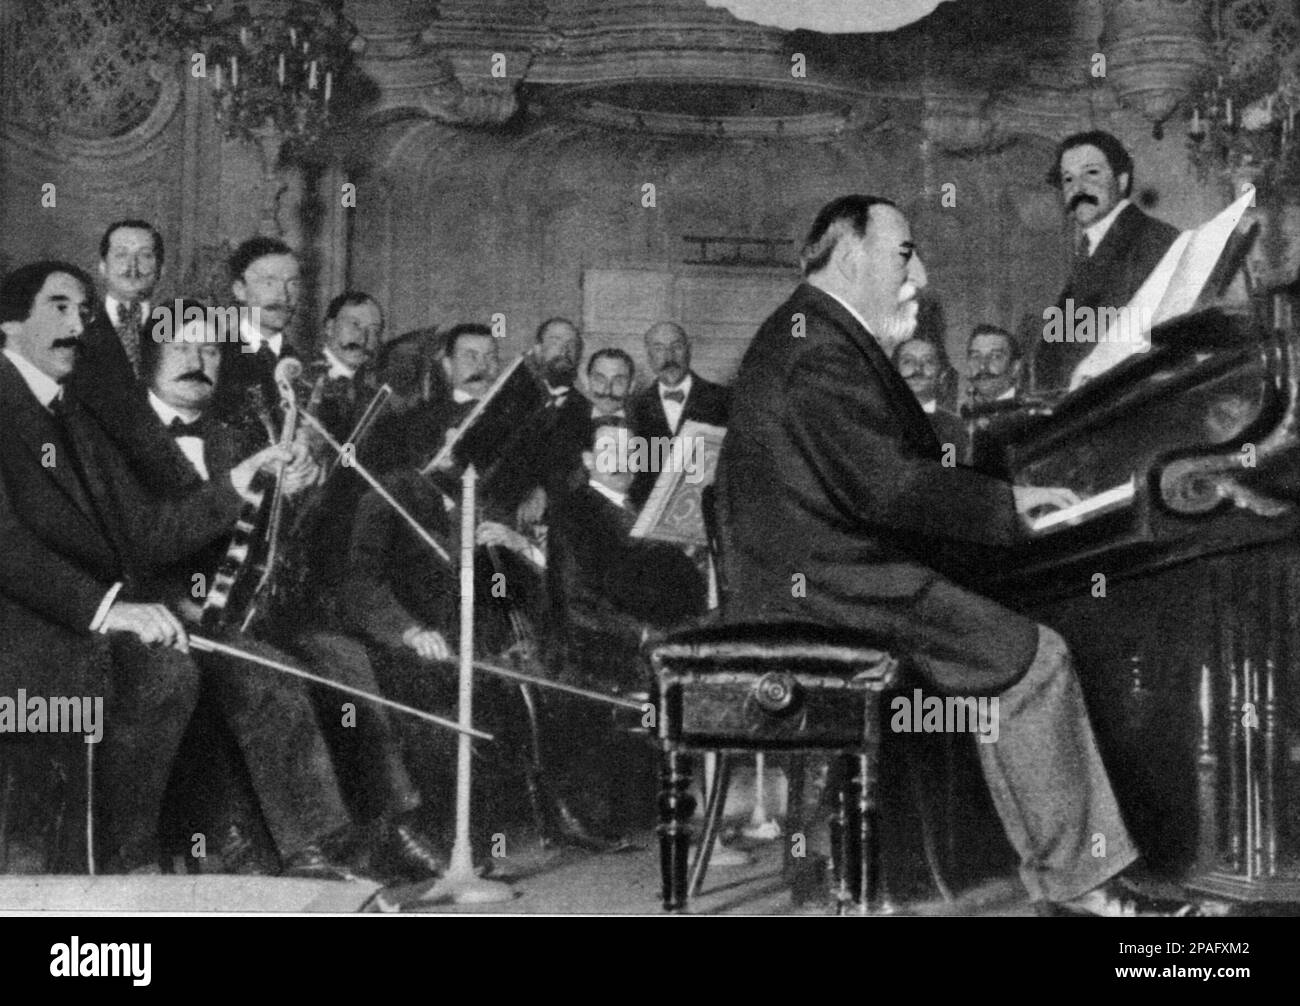 Il virtuoso dell'organo francese e compositore di musica CAMILLE SAINT SAENS (1835 - 1921) alla prima esecuzione della sua composizione CARNIVAL OF THE ANIMALS ( Carnevale degli animali ) . Compose una varietà di opere di successo che includono l'Opera SAMSON E DELILAH , orchestrale e diverse sinfonie , concerti e brani strumentali solistici - Saint-Saens - DIRETTORE D' ORCHESTRA - COMPOSITORE - OPERA LIRICA - CLASSICA - CLASSICA - RITRATTO - RITRATTO - MUSICALE - MUSICA - profilo - profilo - barba - barba - pianoforte - pianoforte - pianoforte - - -- ARCHIVIO GBB Foto Stock